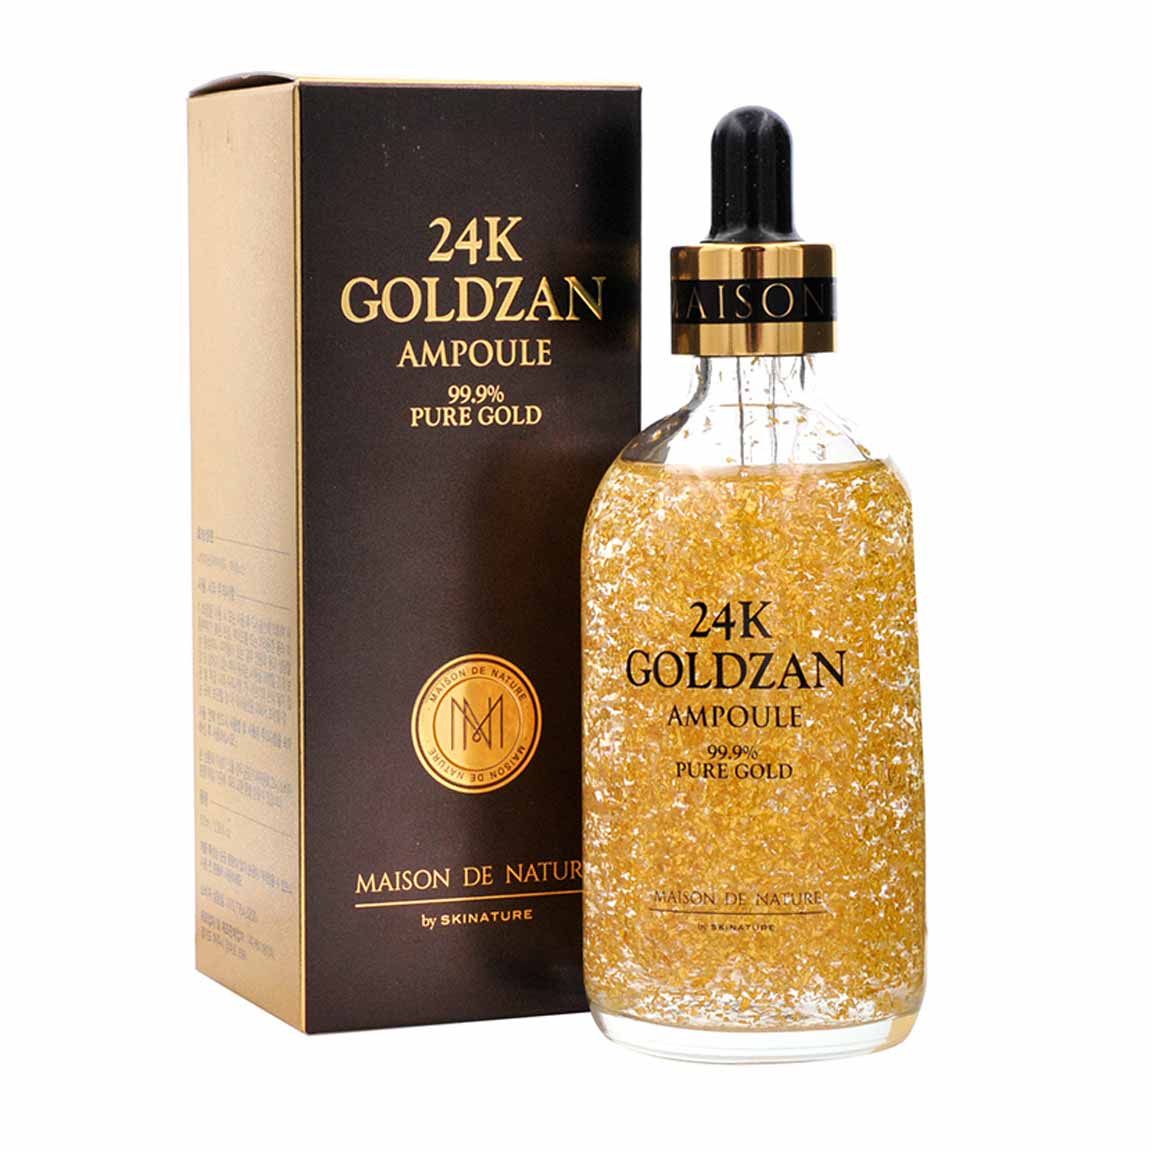 24K Goldzan Facial Serum Ampoule Pure Gold 99.9% Maison De Nature (100ml)